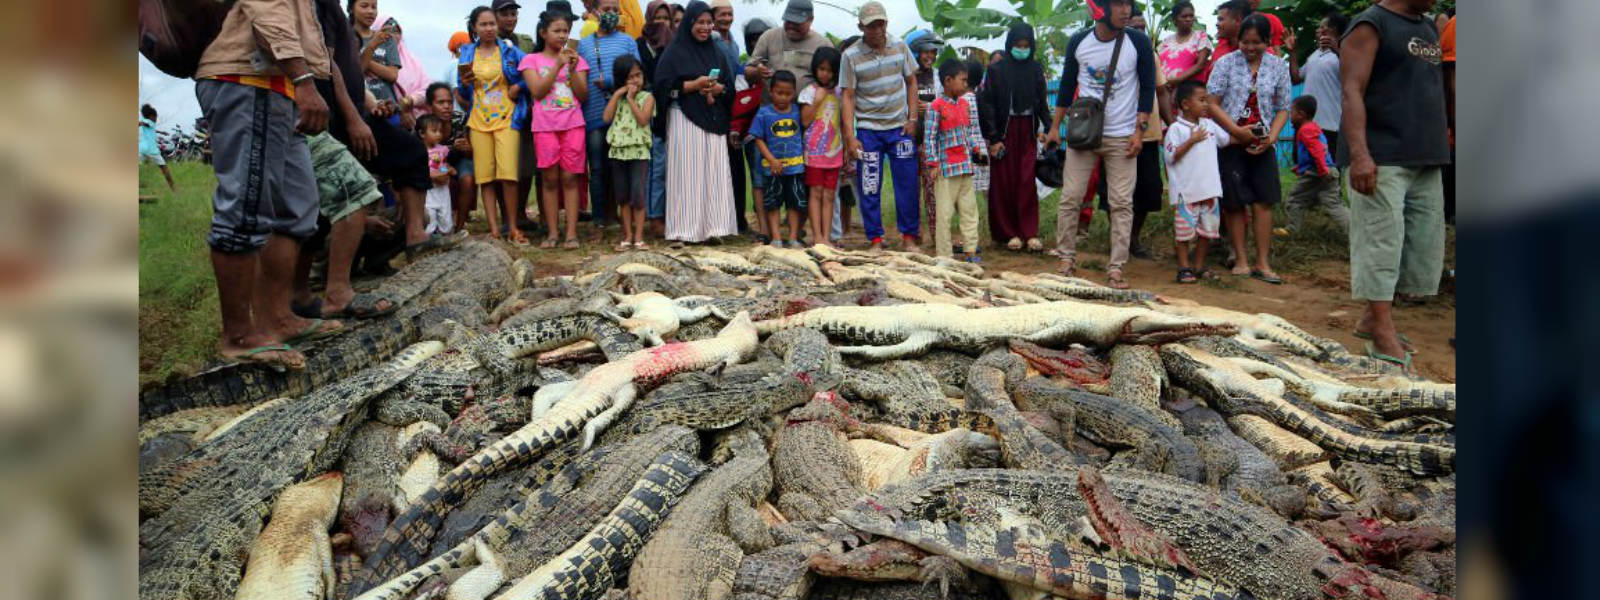 Villagers kill nearly 300 crocodiles